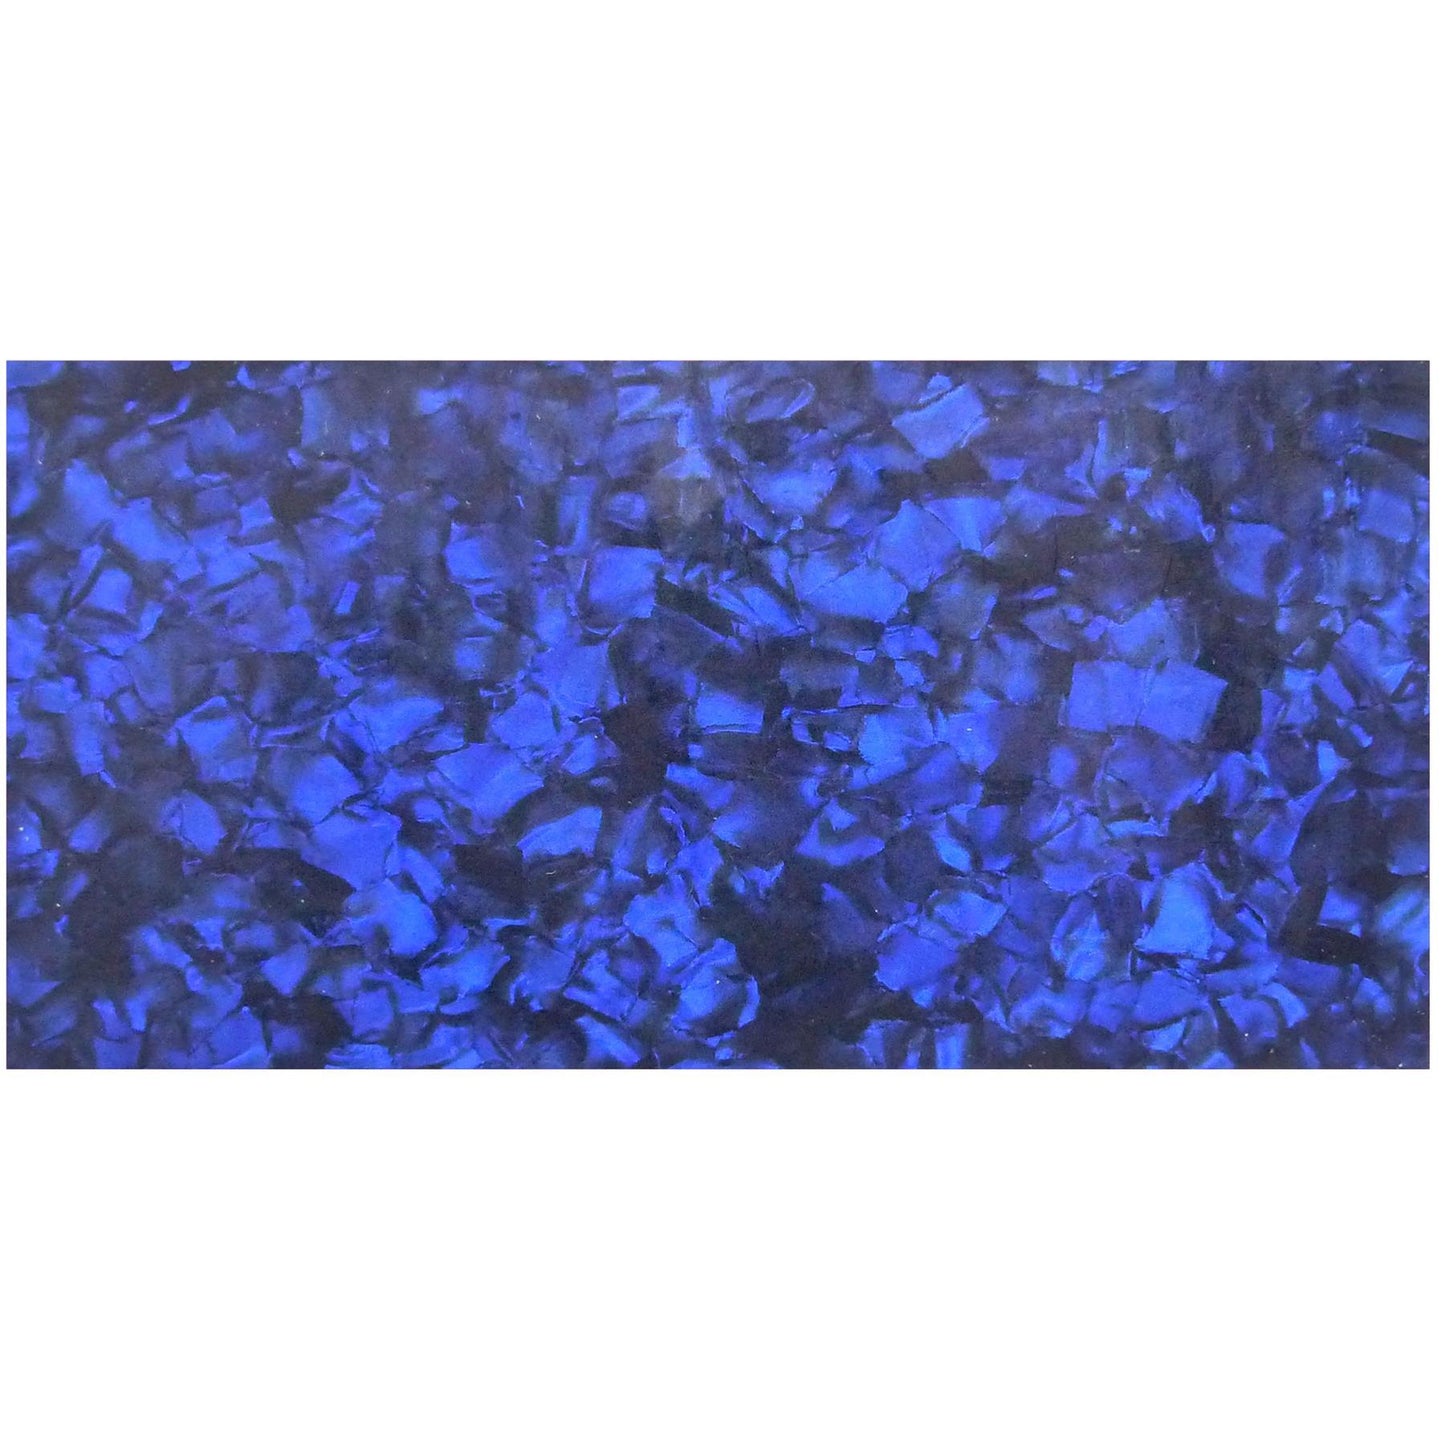 Incudo Blue Pearloid Celluloid Sheet - 200x100x1.2mm (7.9x3.94x0.05")